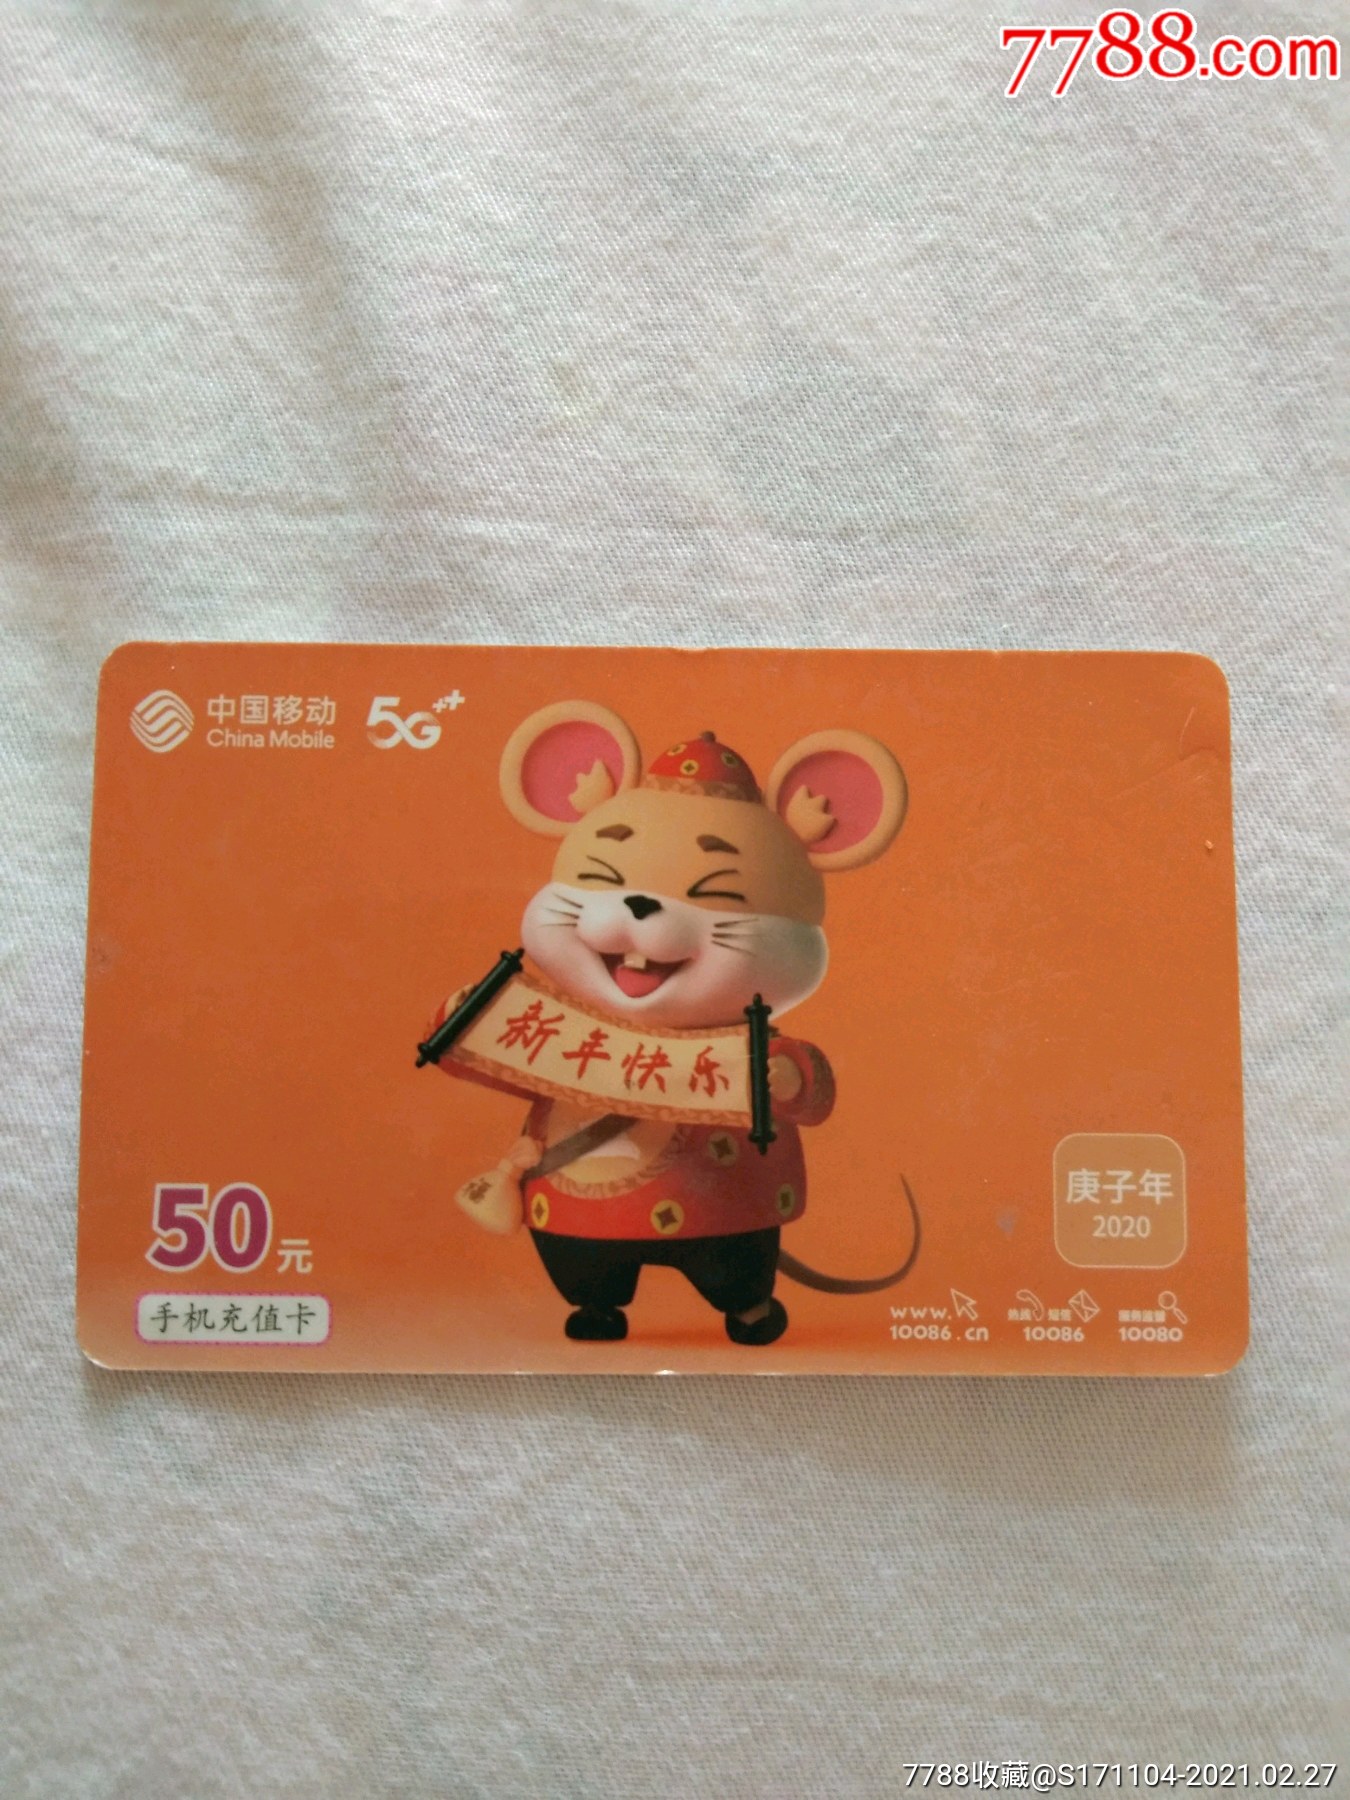 中国移动手机充值卡